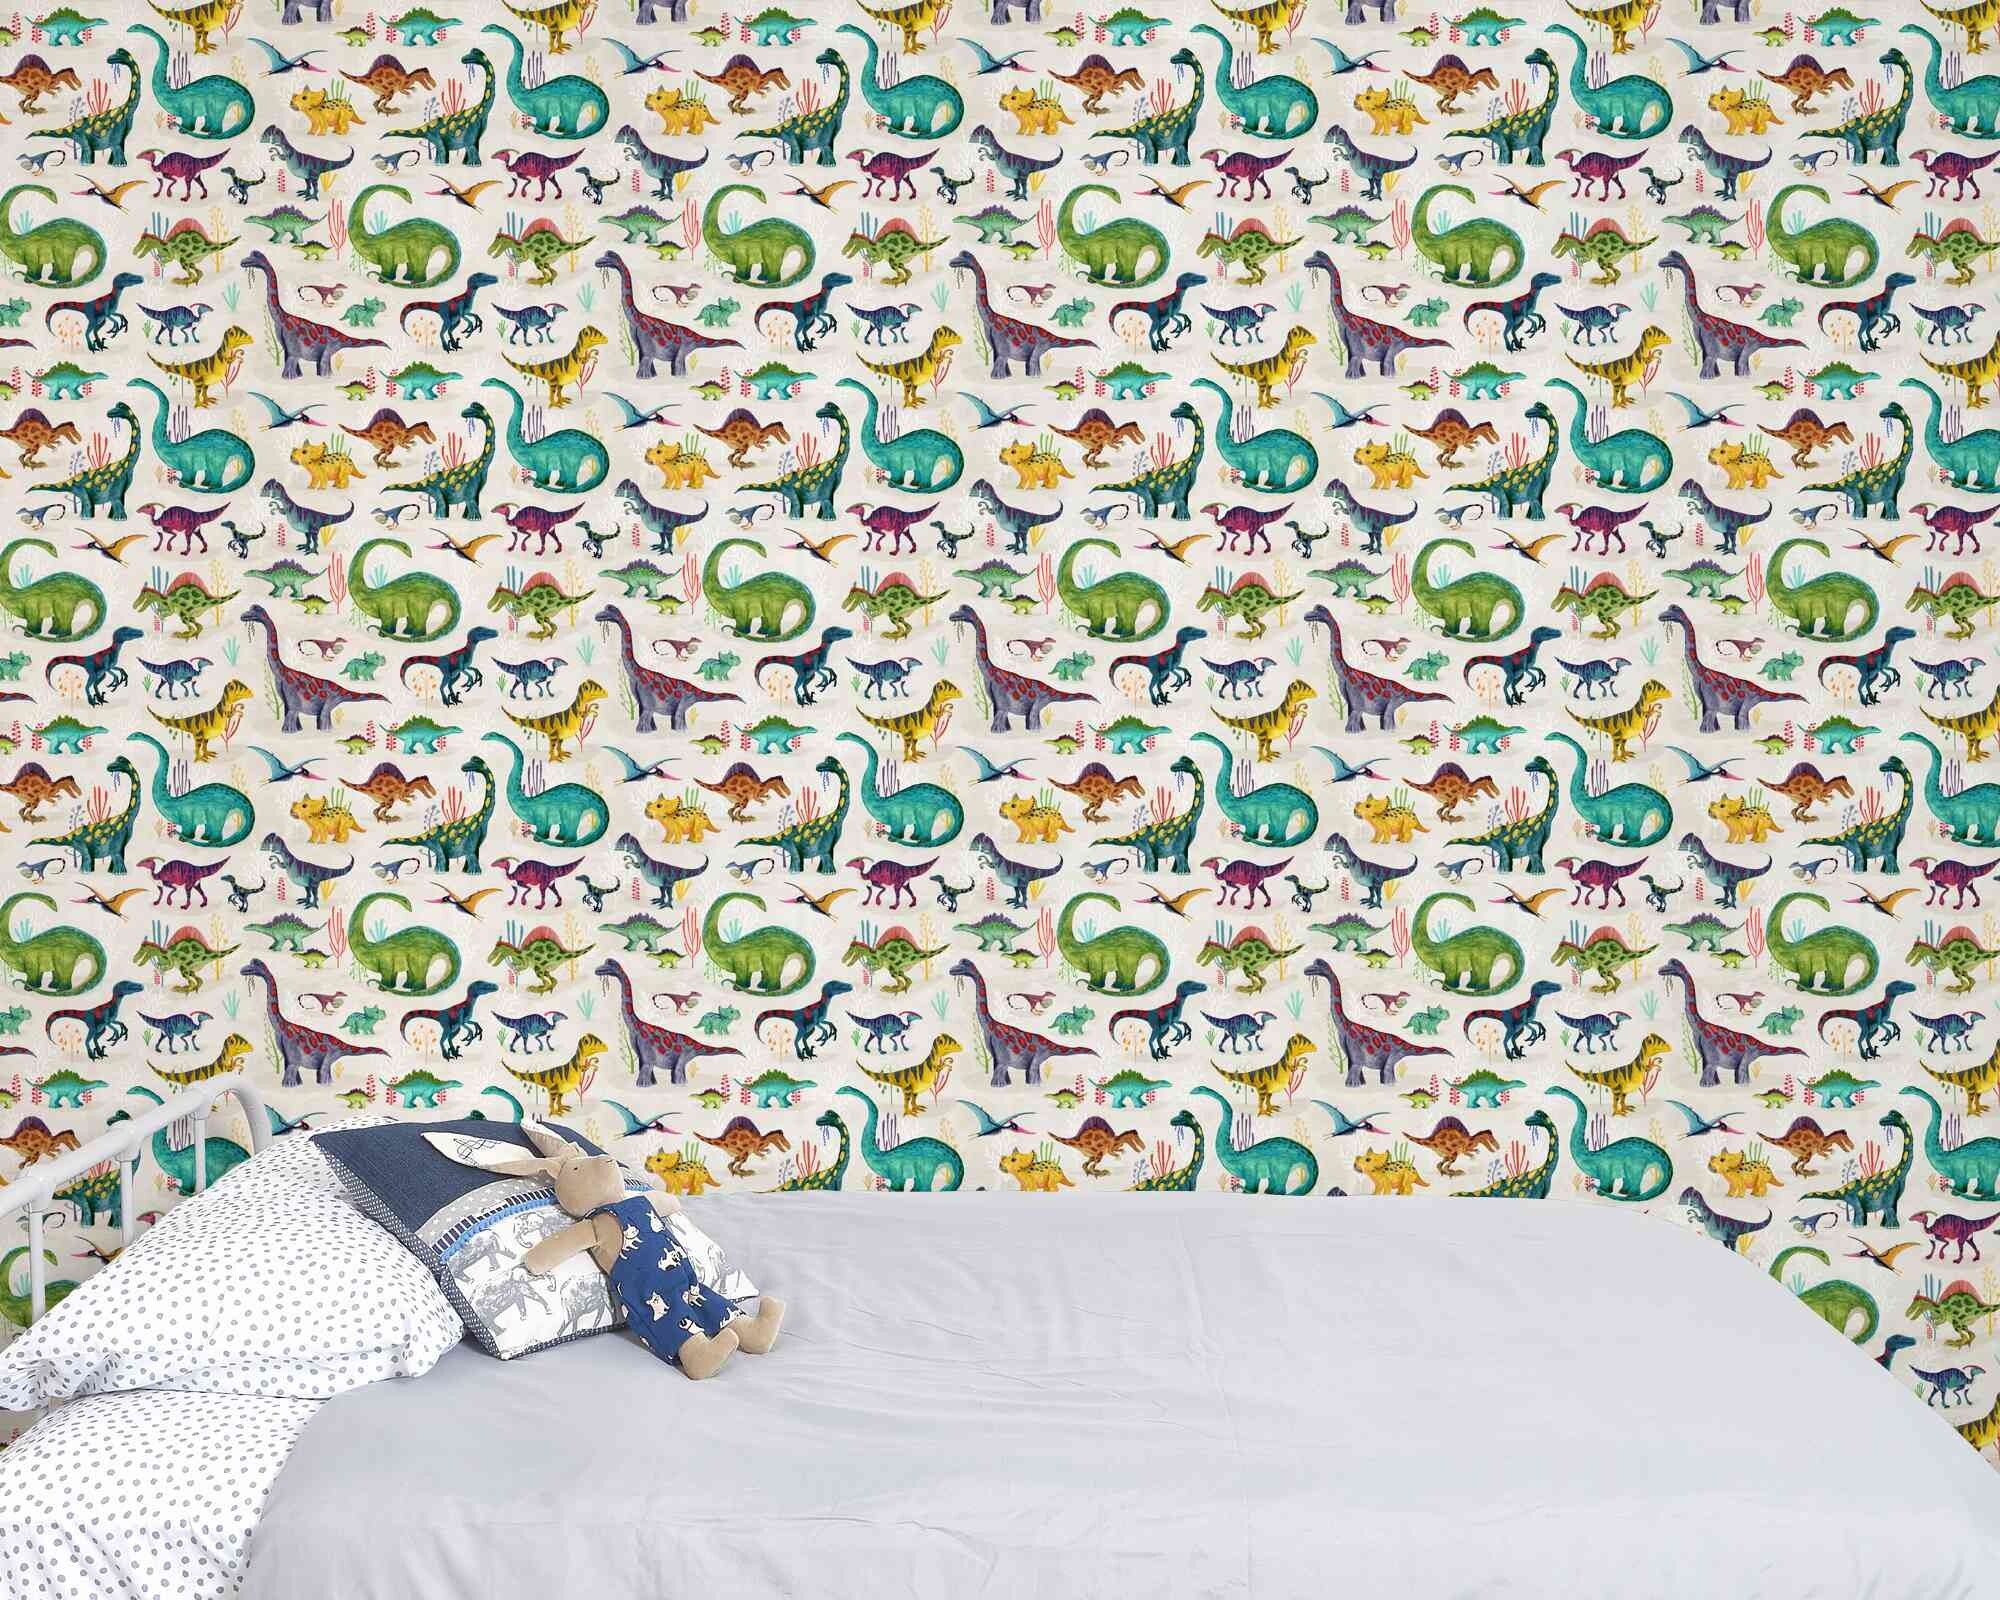 Dinosaur wallpaper bright